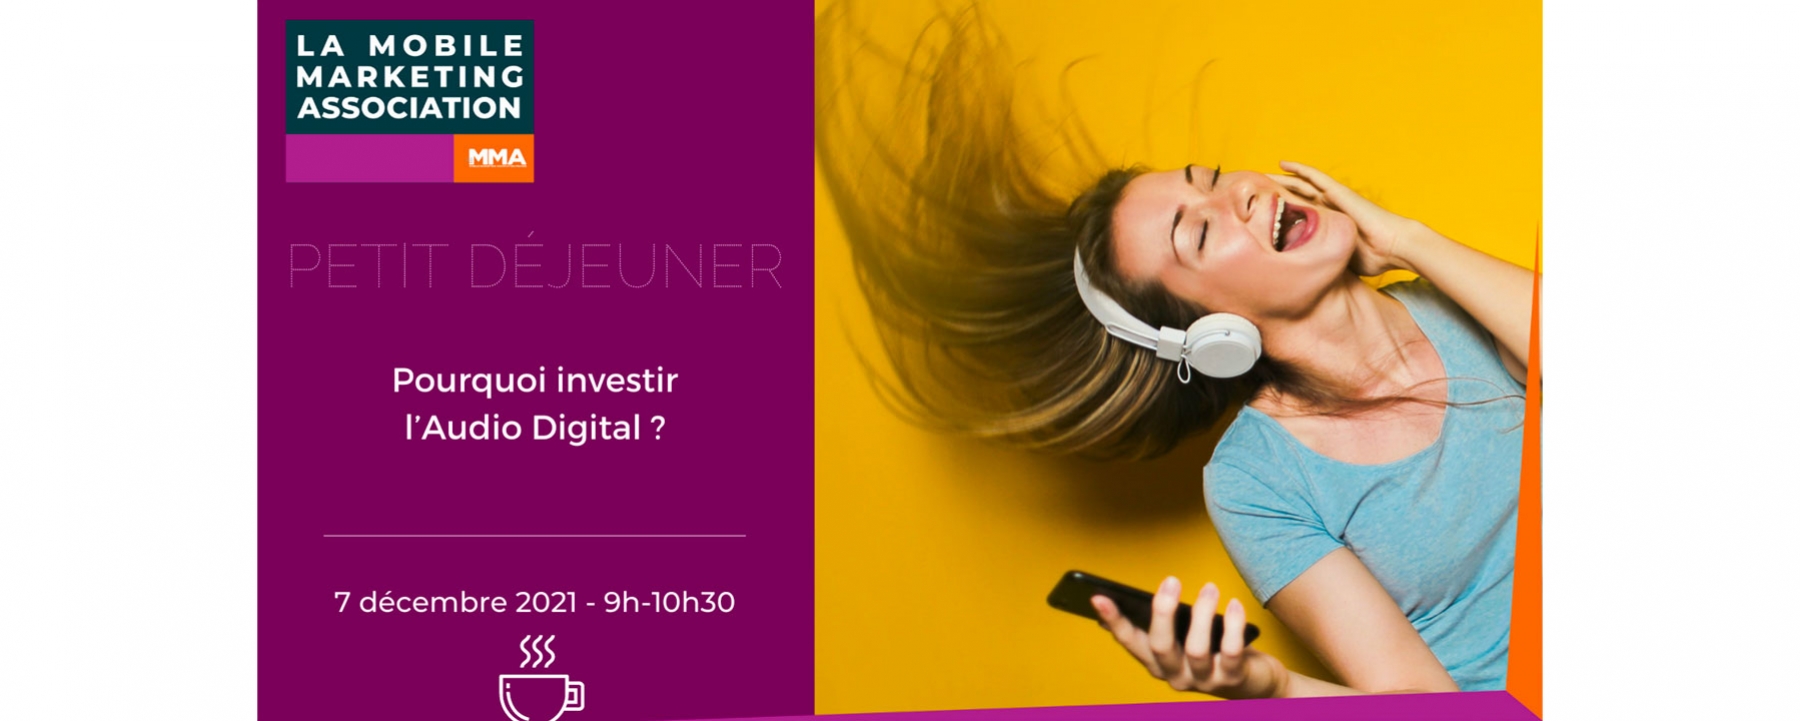 Petit-déjeuner "virtuel " du Marketing Mobile : "Pourquoi investir l’Audio Digital ?" MMA le 7 décembre 2021